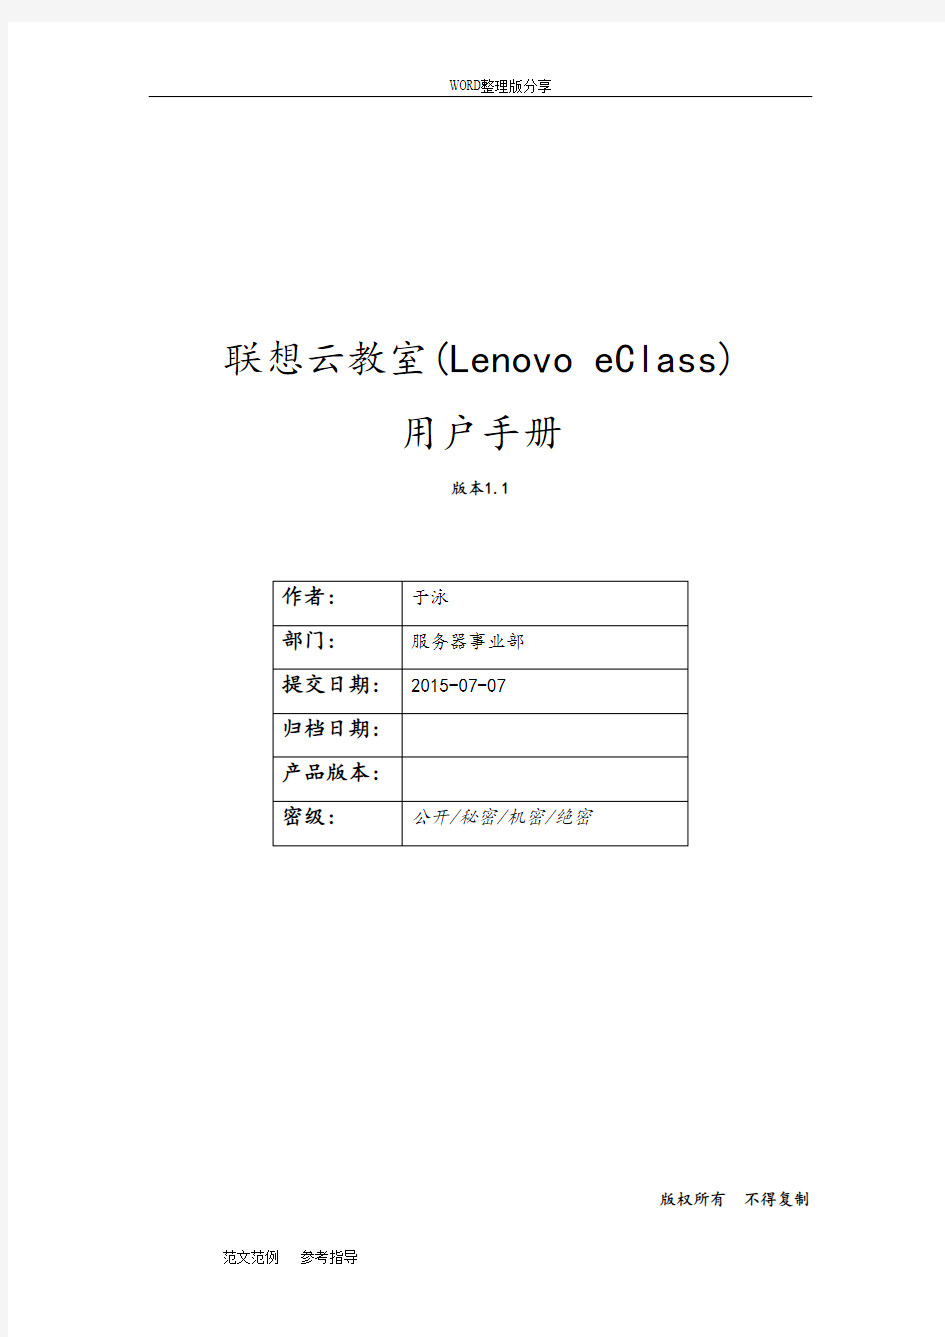 联想云教室[LenovoeClass]用户手册v1.2_2016年